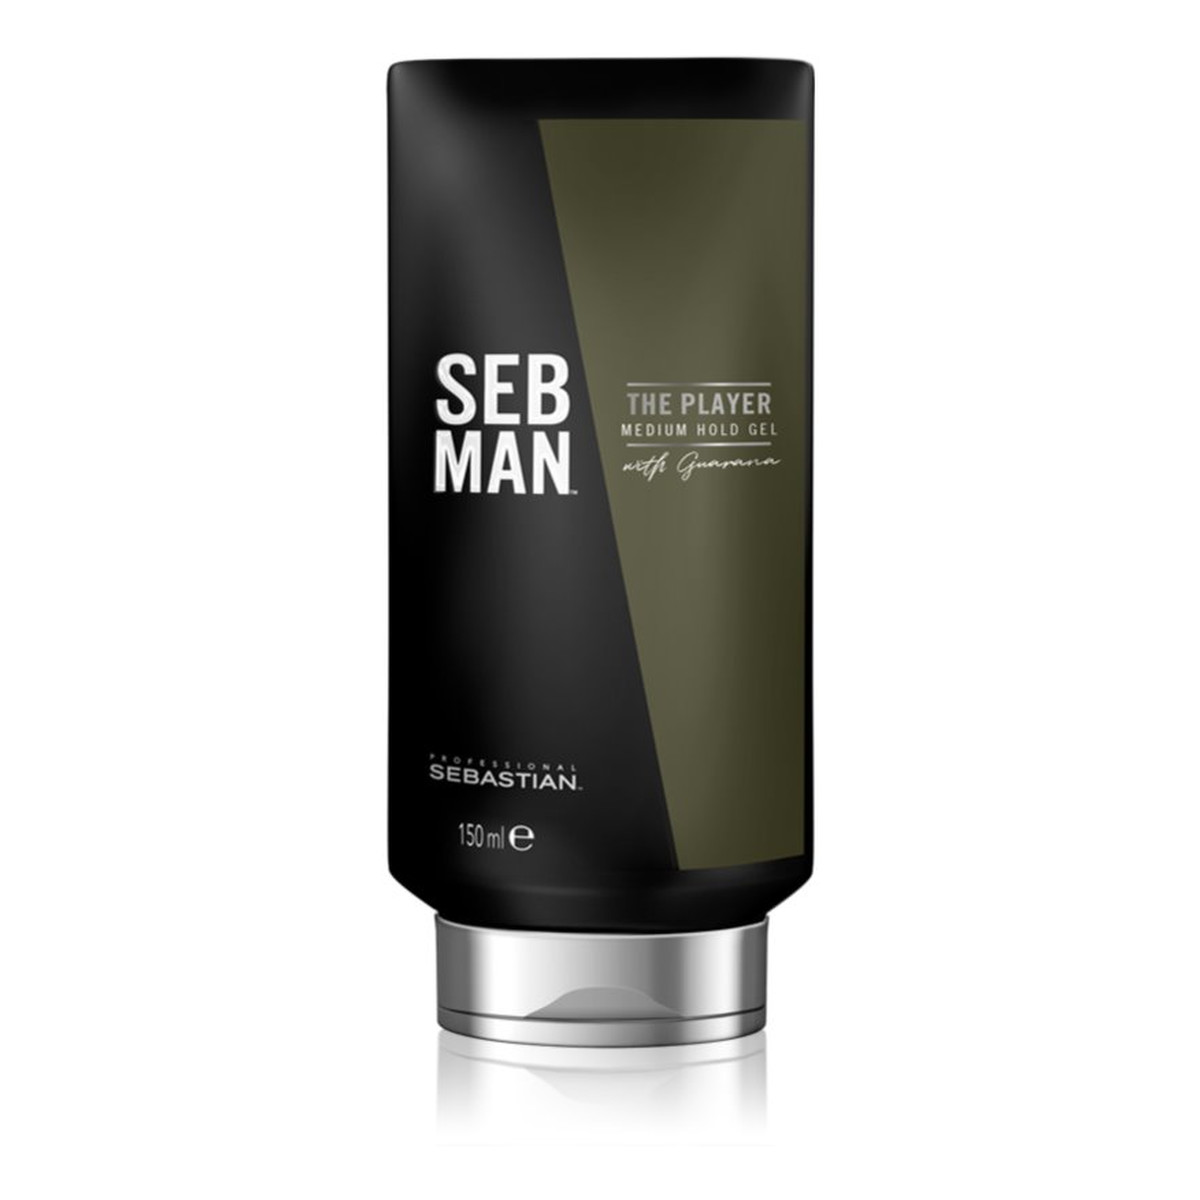 Sebastian Professional Seb Man The Player Medium Hold Gel żel do stylizacji włosów 150ml